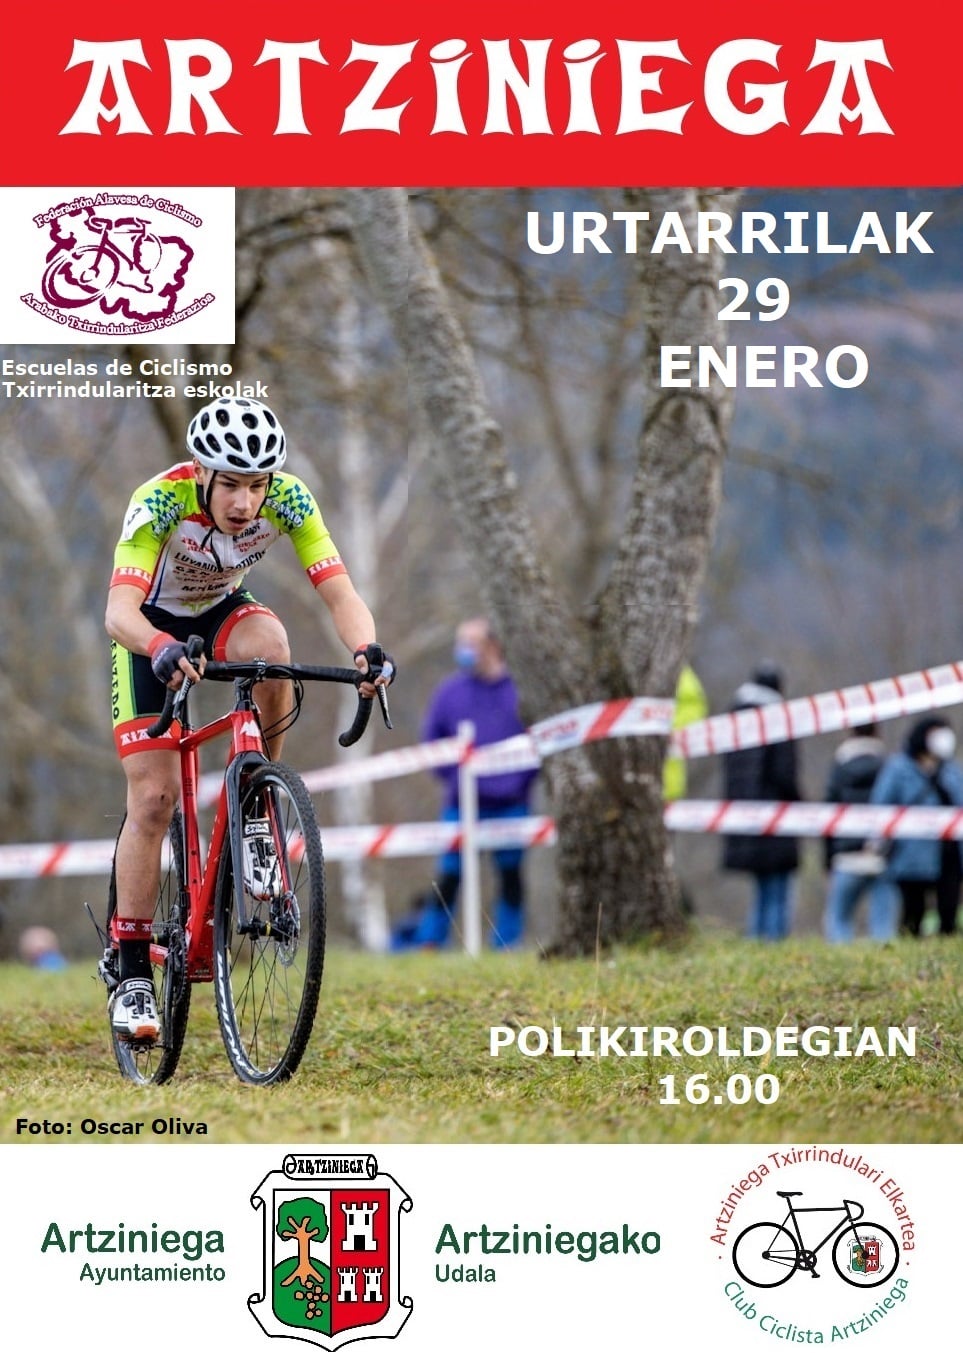 El día 29 de enero, a las 4 de la tarde, organizado por el Club Ciclista Artziniega y con el patrocinio del Ayuntamiento de Artziniega, se disputará en el polideportivo una prueba de las Escuelas de Ciclismo de Álava.